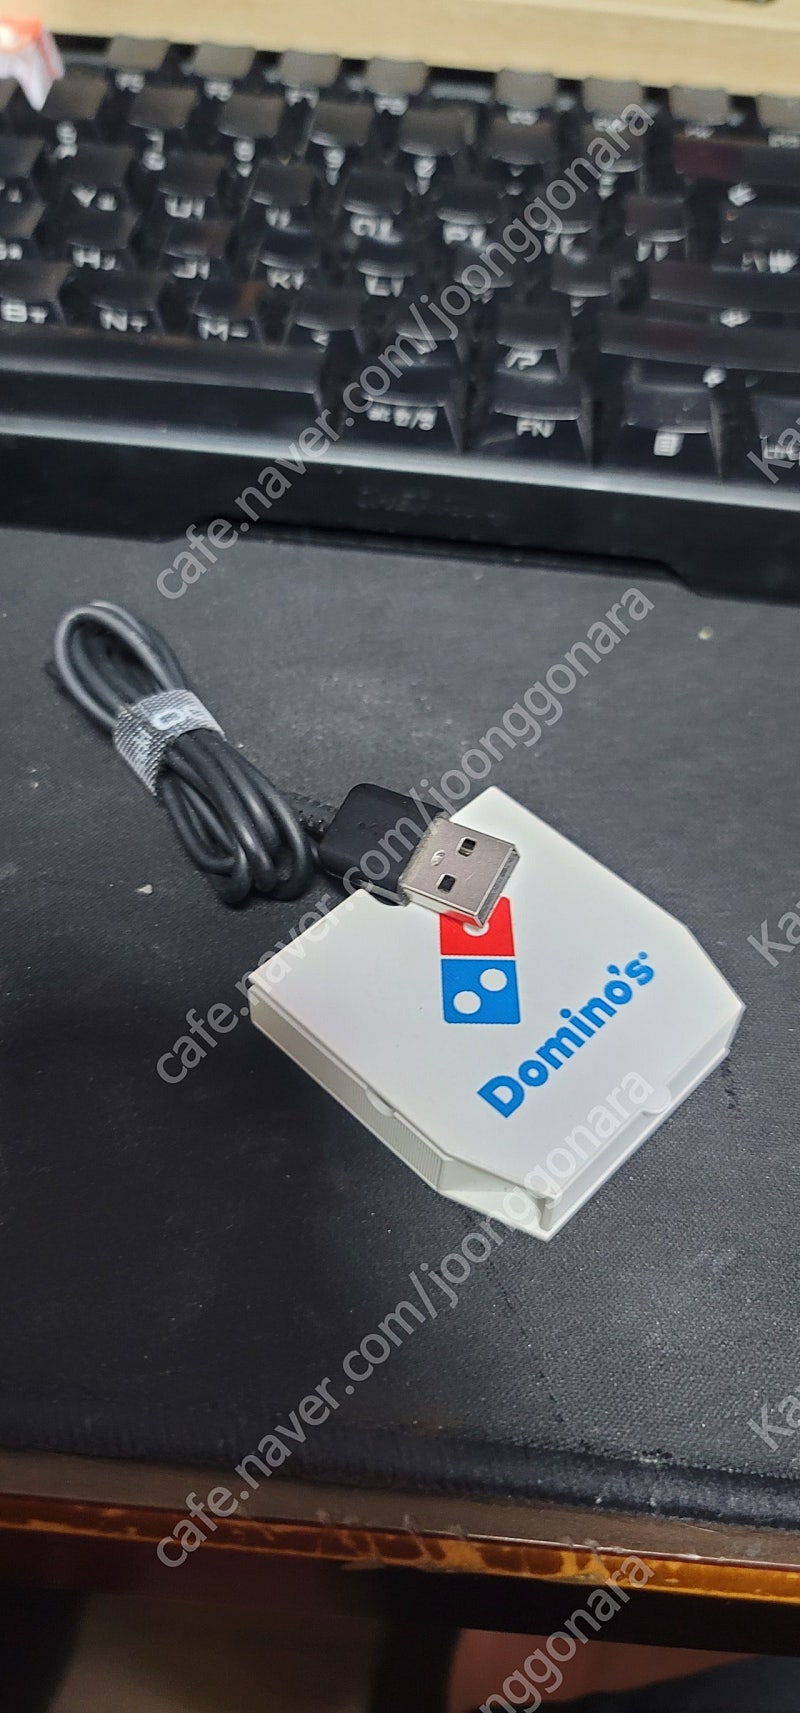 갤럭시 워치 시리즈, USB충전기 (도미노피자 케이스 포함)